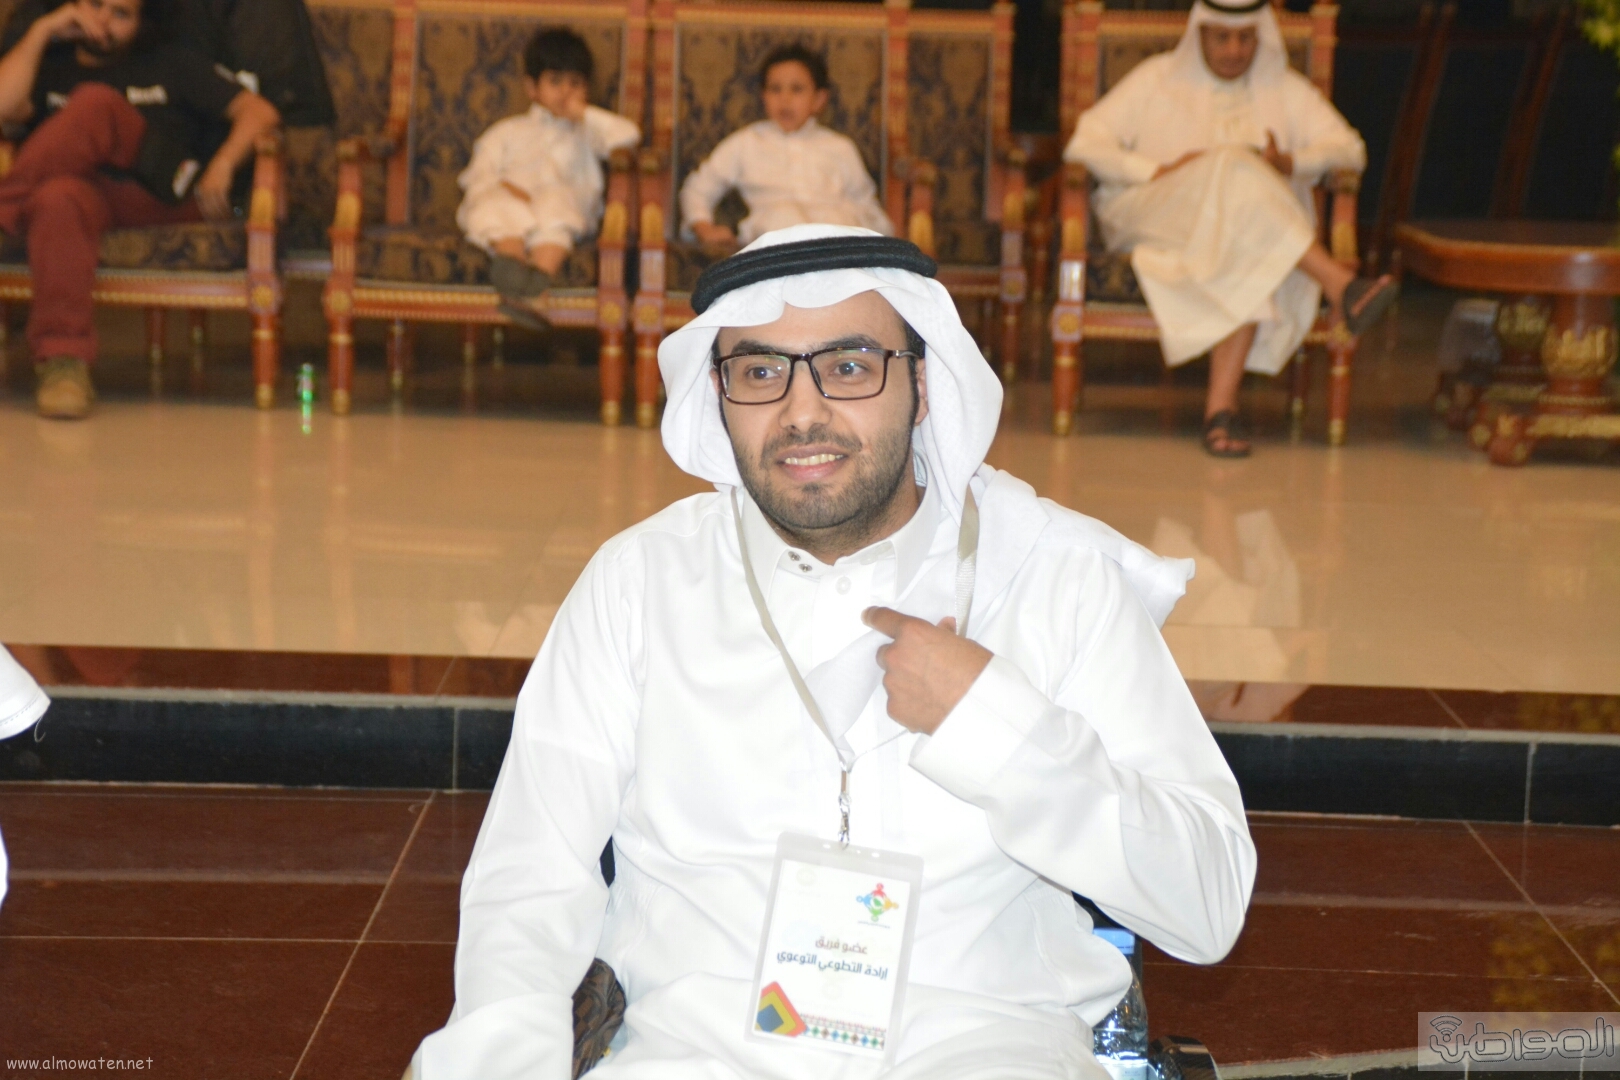 وجه 3 رسائل عبر “المواطن”.. عبدالعزيز مرعي قهر الإعاقة وأبدع في الهندسة